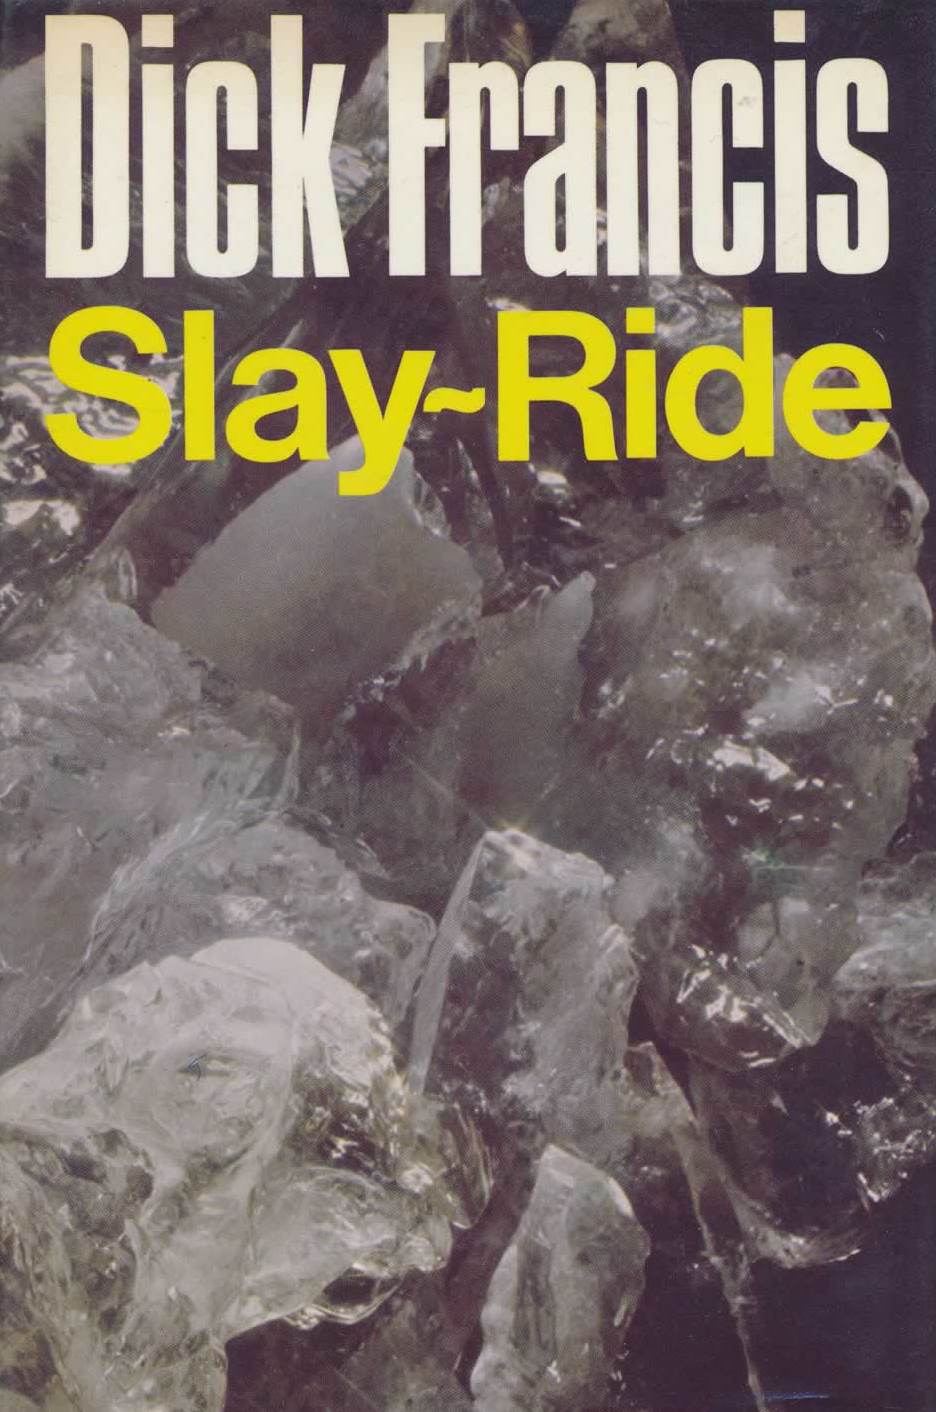 Slay-Ride - listen book free online